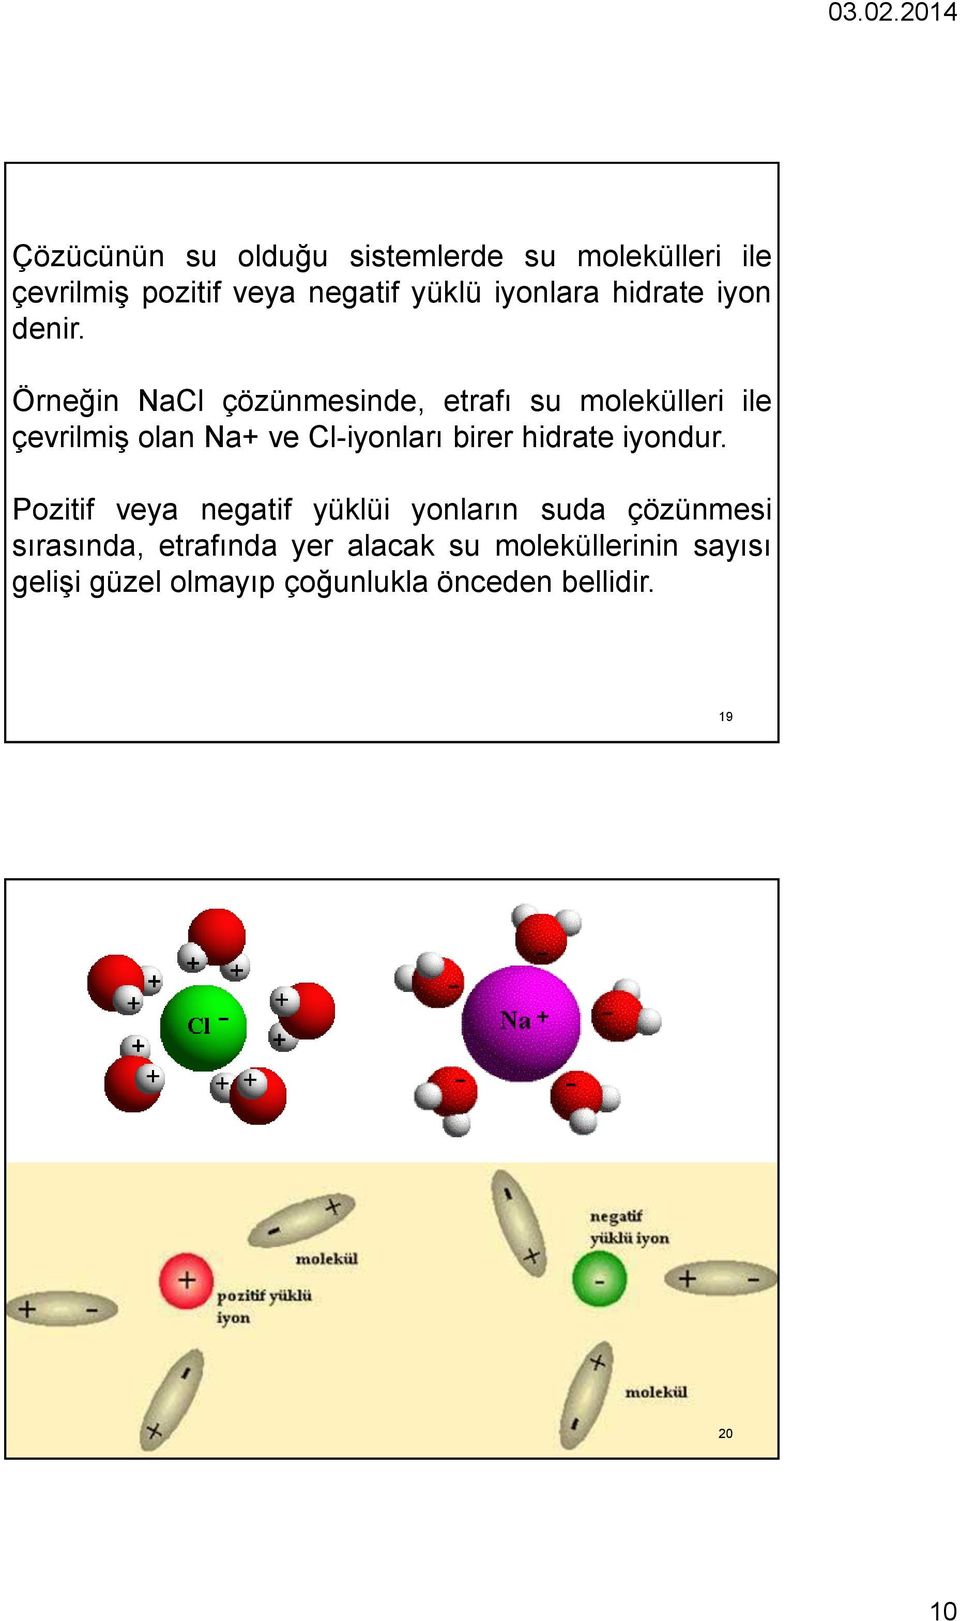 Örneğin NaCl çözünmesinde, etrafı su molekülleri ile çevrilmiş olan Na+ ve Cl-iyonları birer